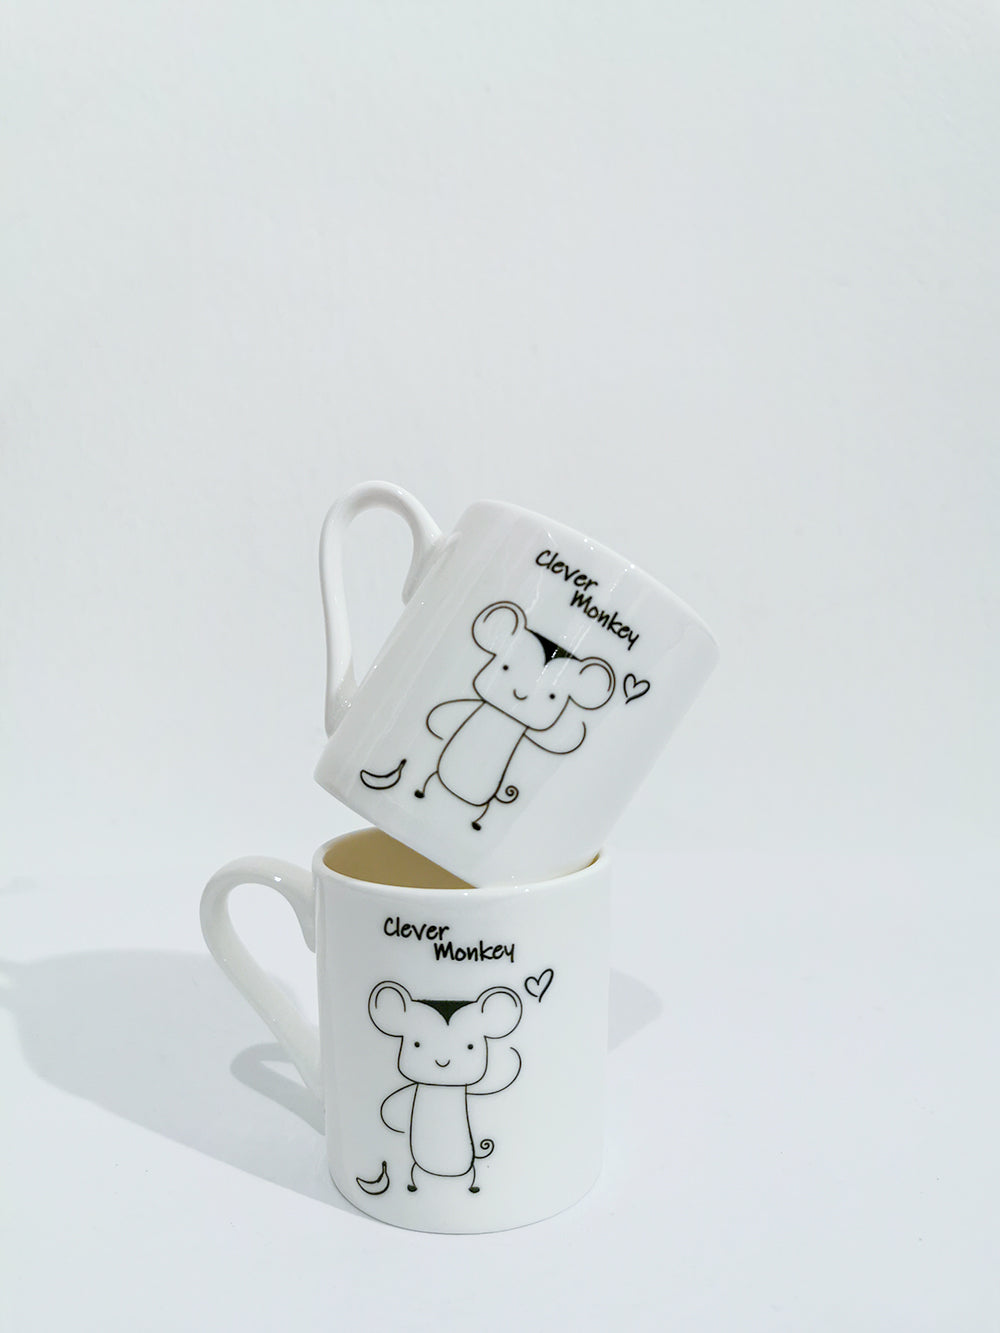 Chinese Zodiac Mug - "Clever Monkey" - Gifts by Art Tree